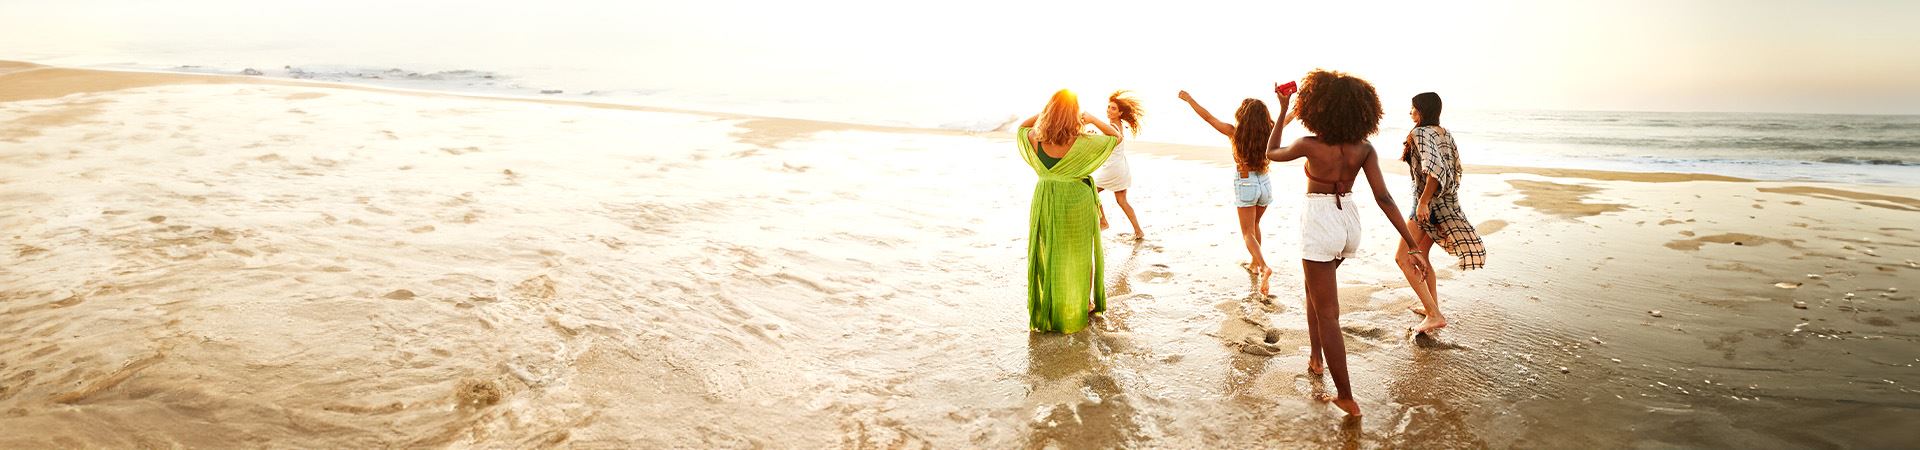 Esta foto mostra cinco meninas à beira-mar. Uma das meninas está com os braços levantados para o ar, enquanto a outra está correndo. Todas elas estão vestindo roupas leves de verão. O mar é mostrado em segundo plano, com a luz indicando o pôr do sol.